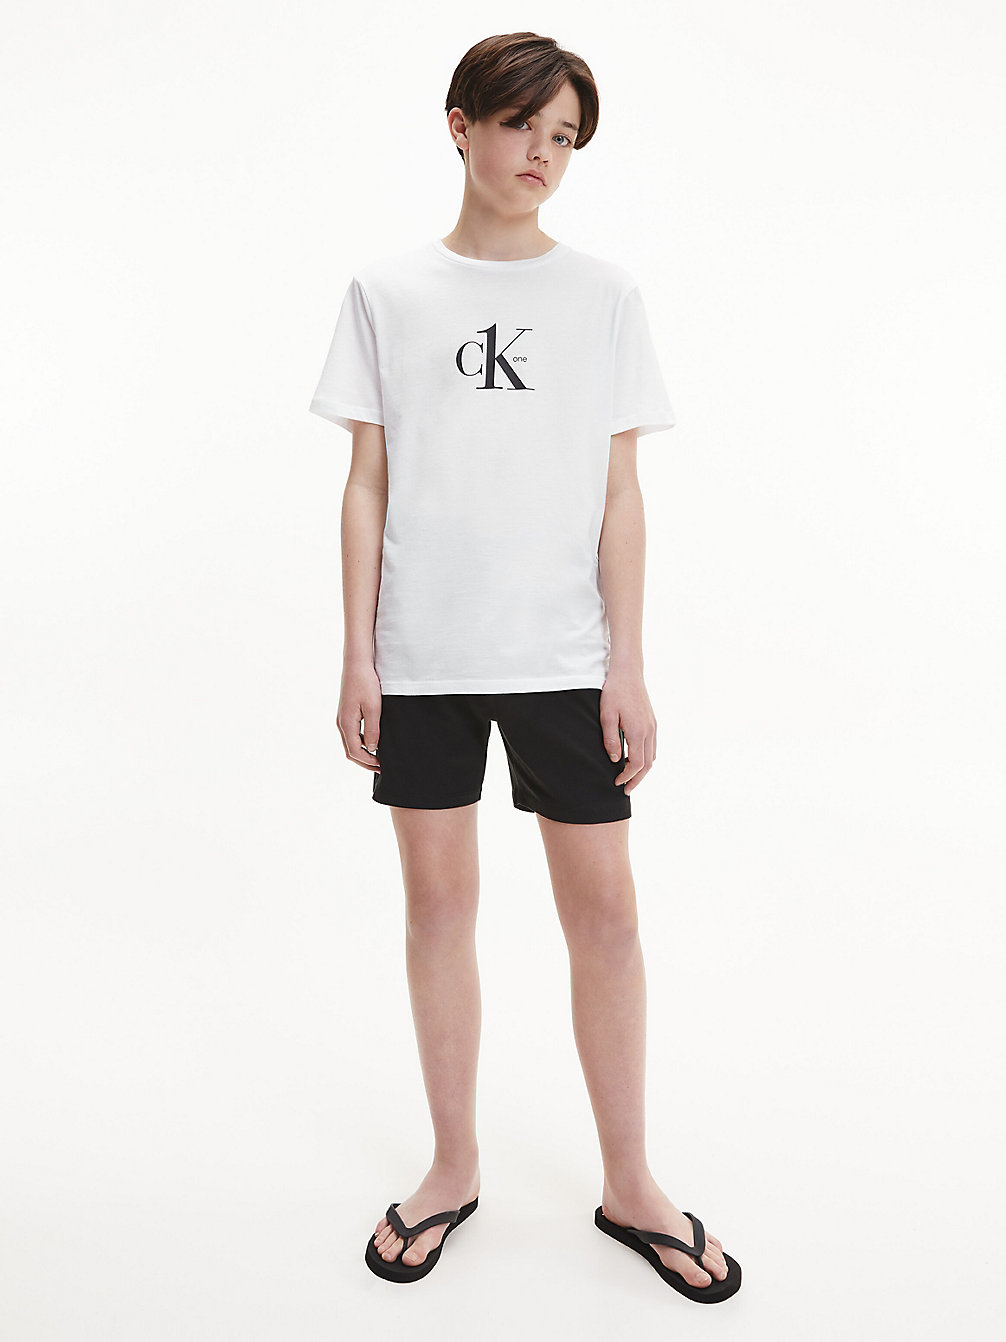 PVH CLASSIC WHITE Strand-T-Shirt Für Jungen - CK One undefined Jungen Calvin Klein